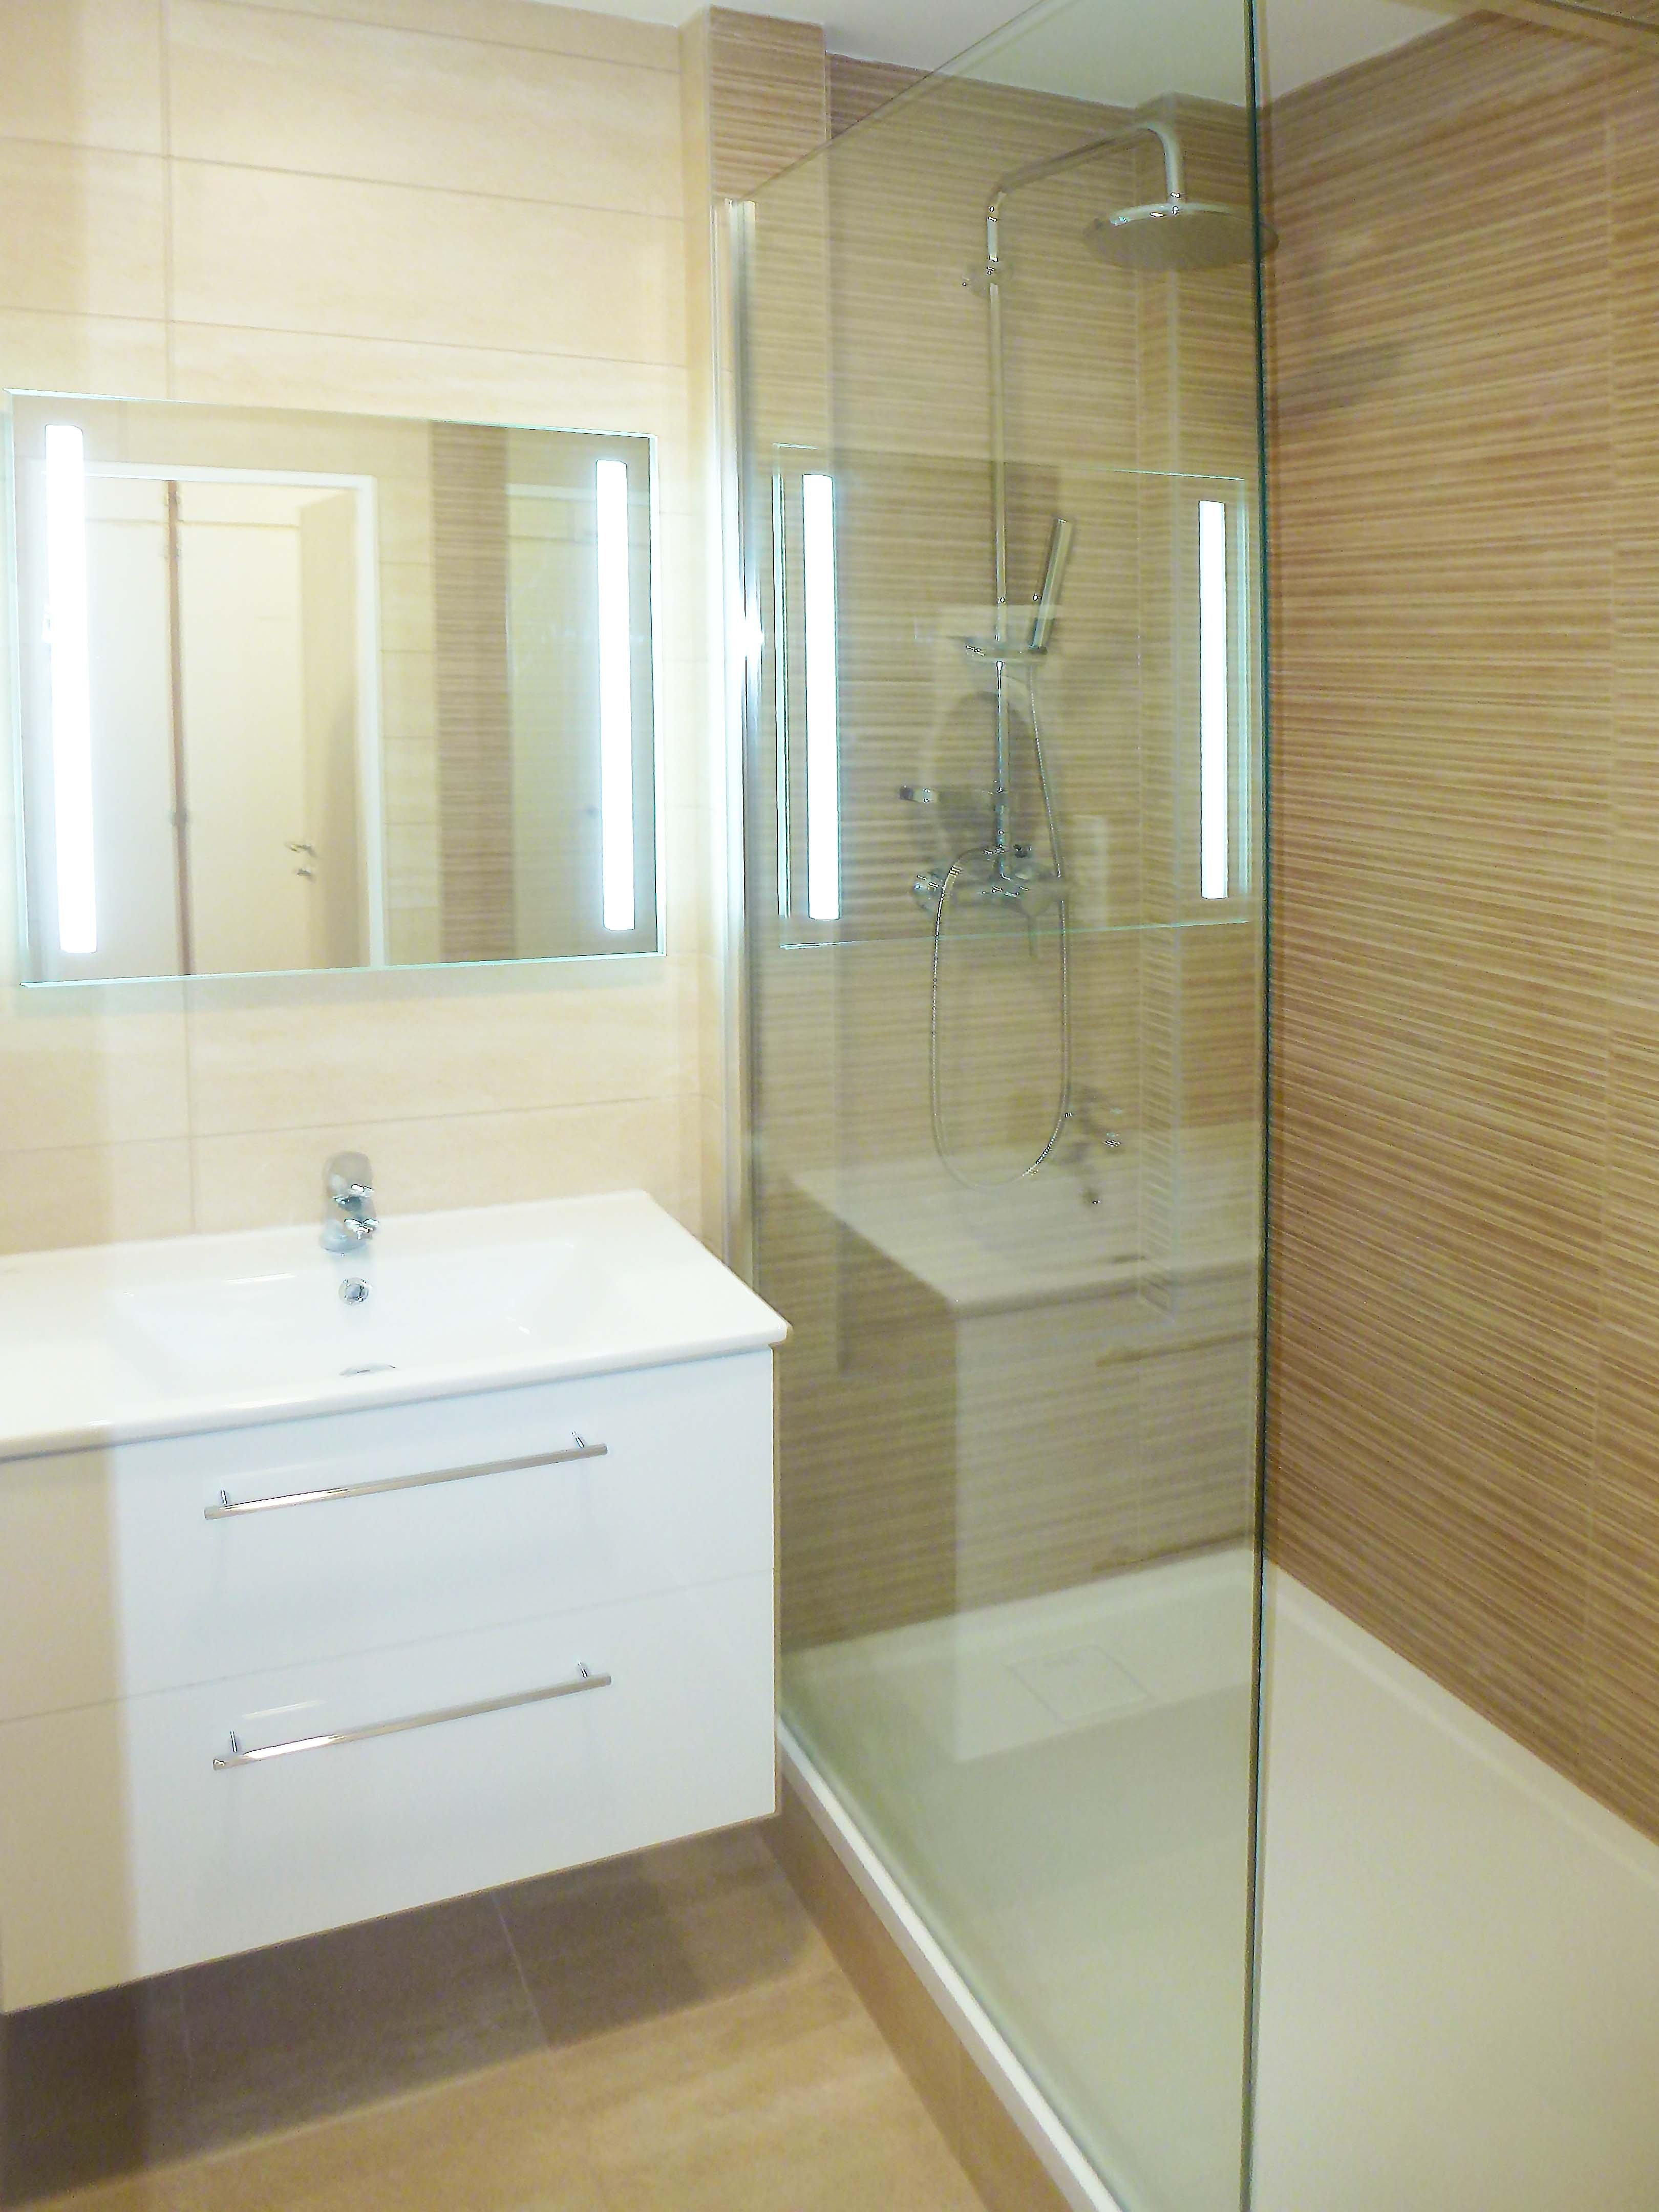 Rekonstrukce koupelny v paneláku - sprchový kout Gelco Walk In | Koupelny-svitavy.cz